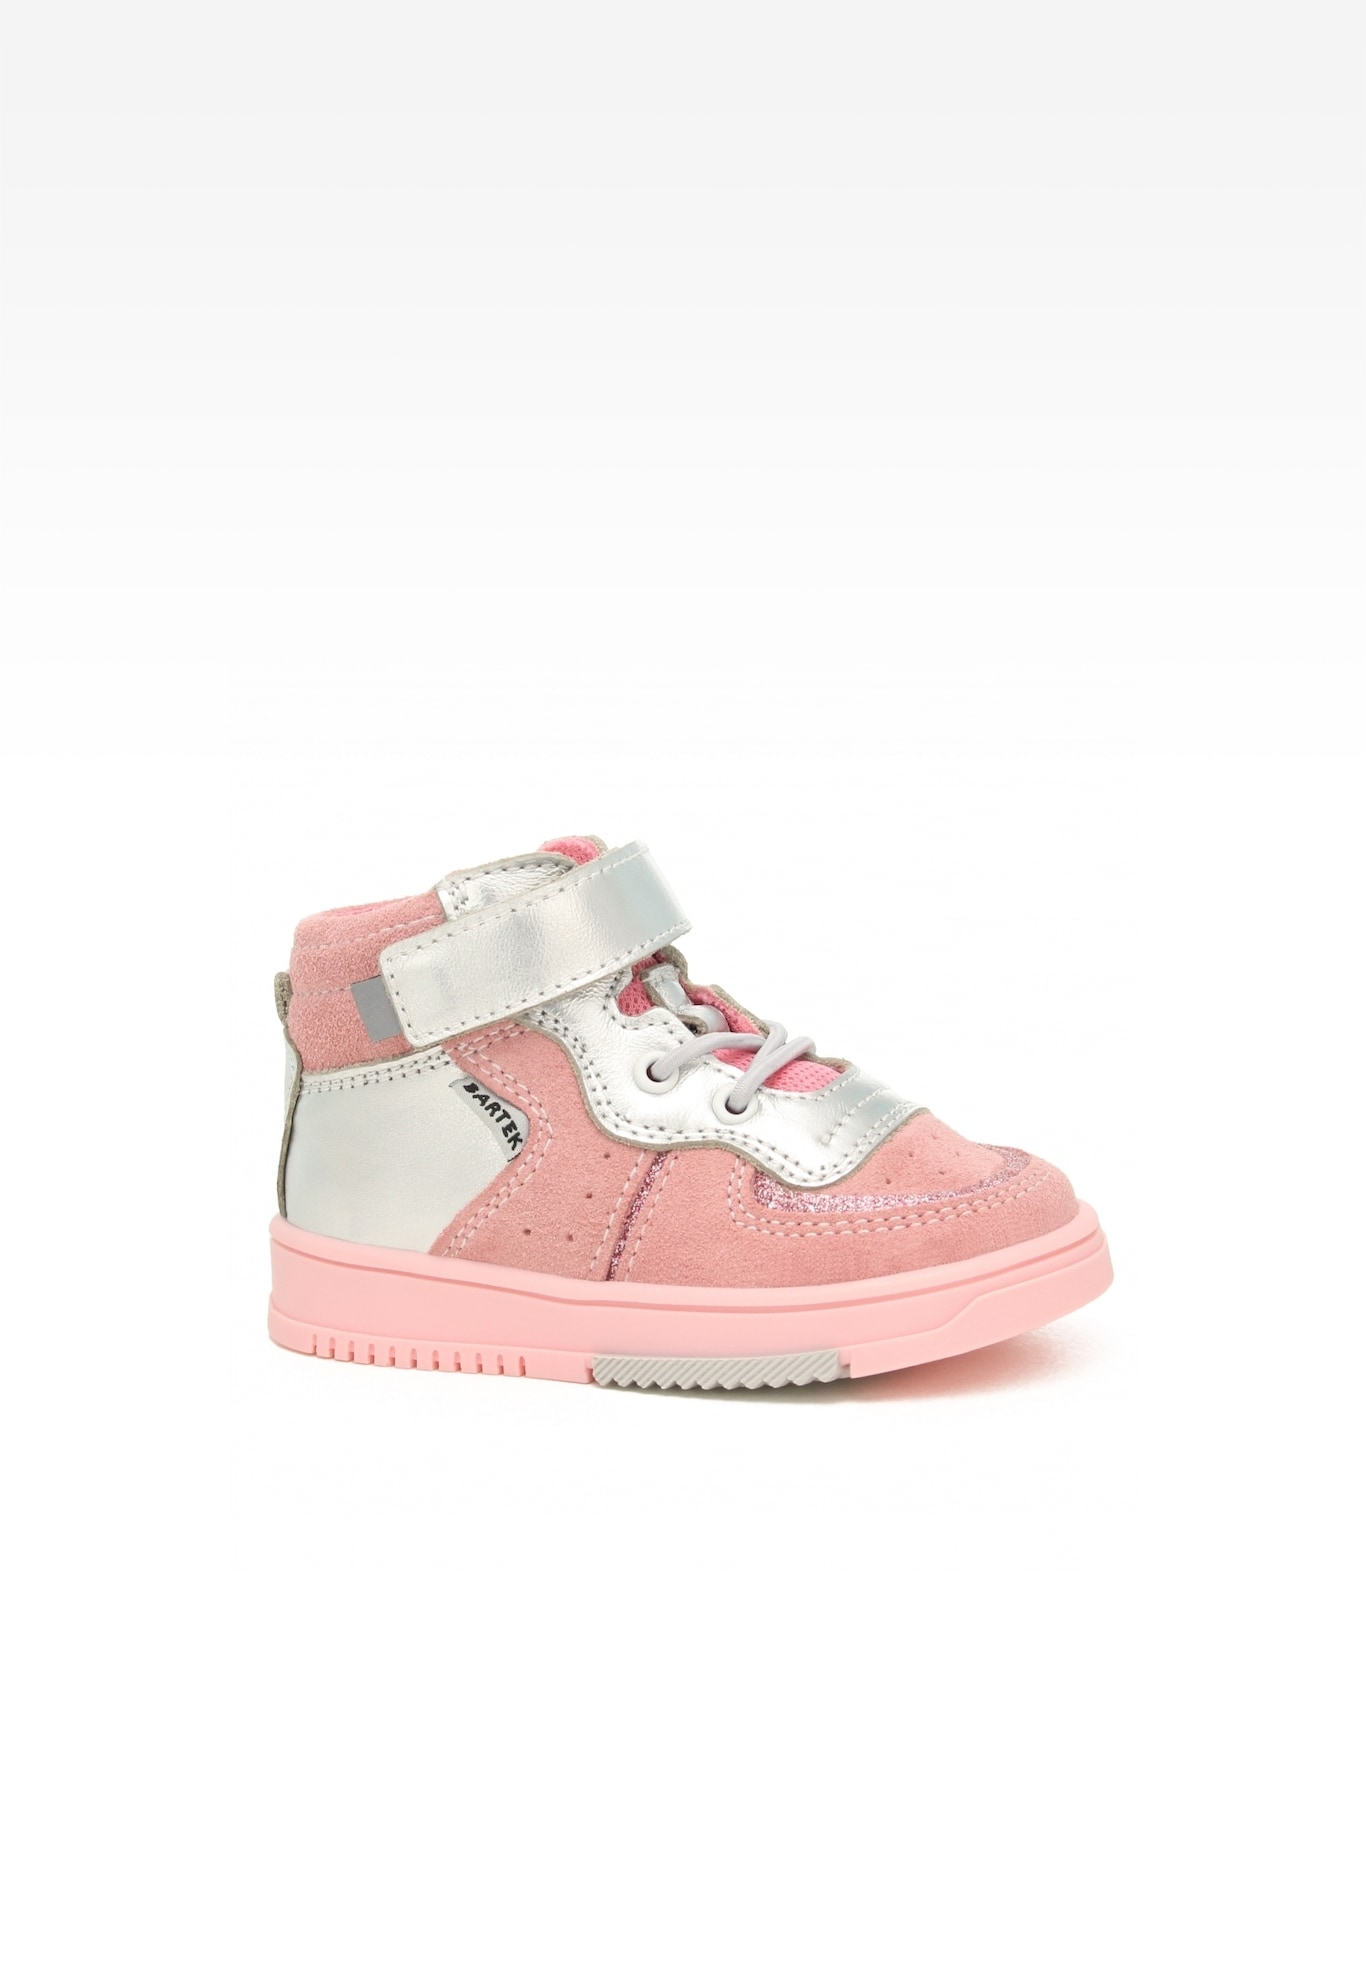 Sneakers BARTEK 11583007, dla dziewcząt, różowo-srebrny